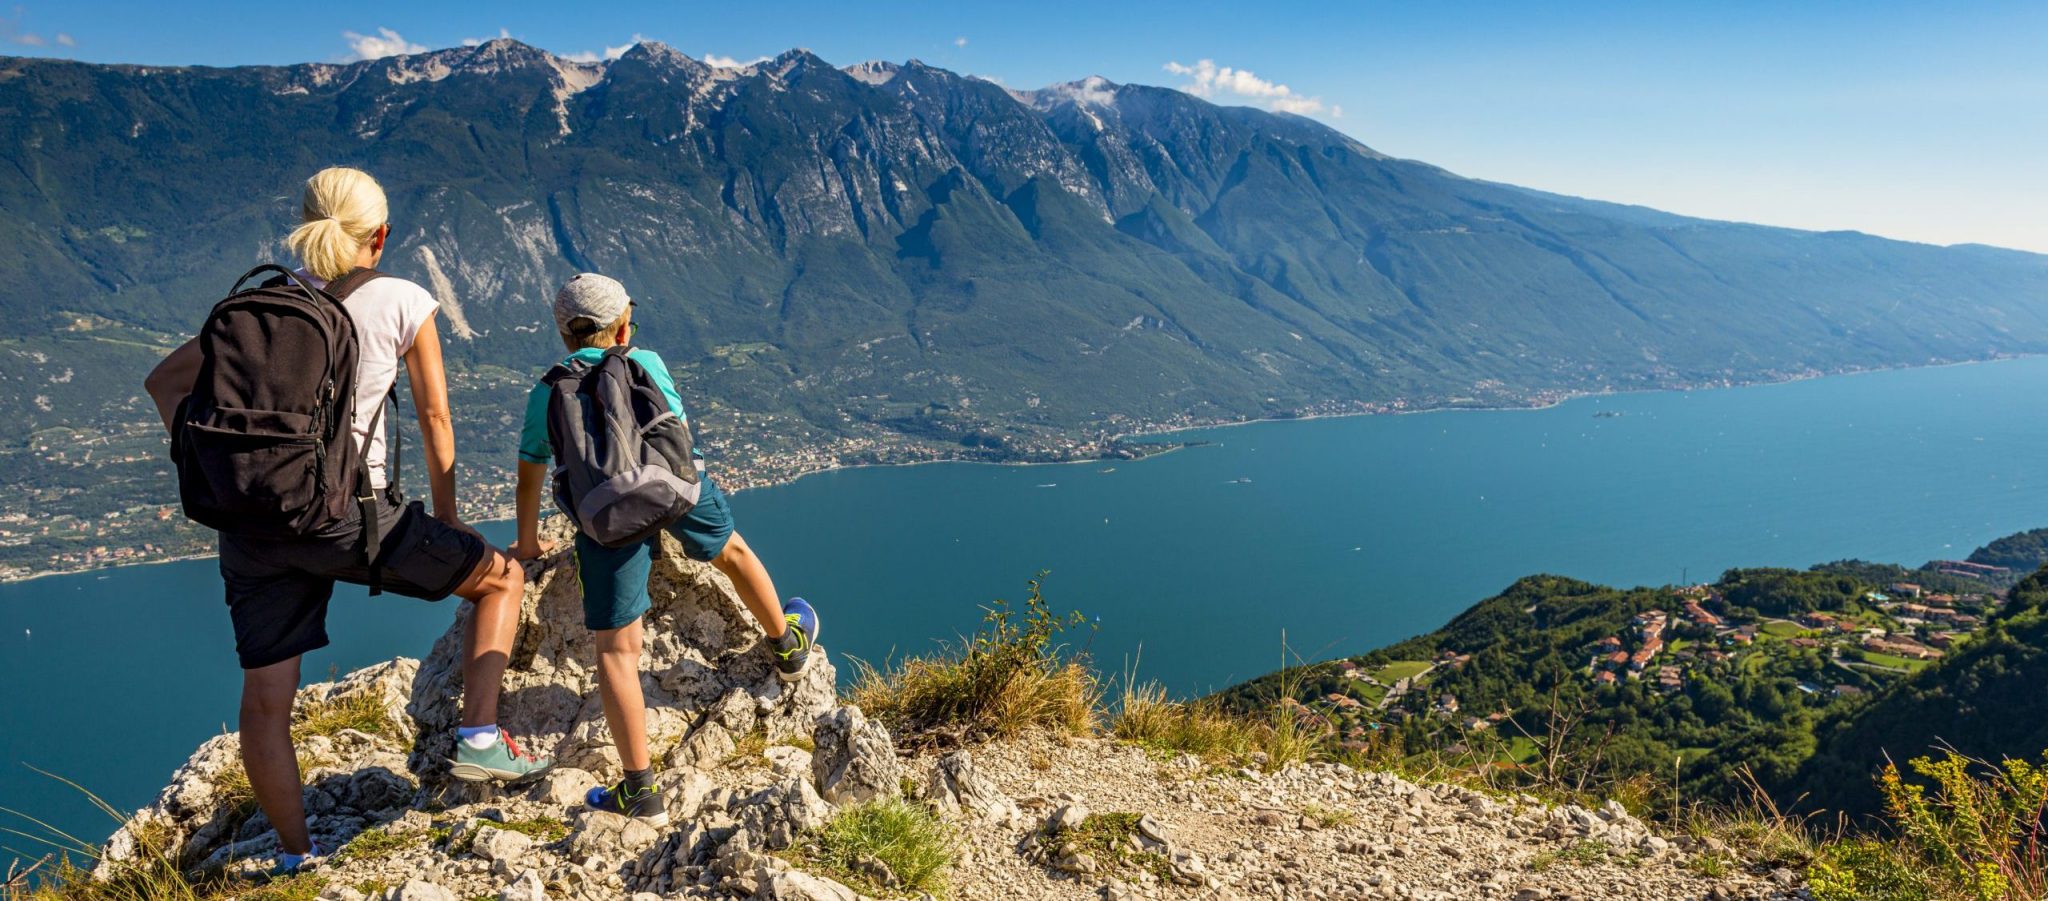 Explore Mount Baldo: A Nature Lover’s Paradise Overlooking Lake Garda